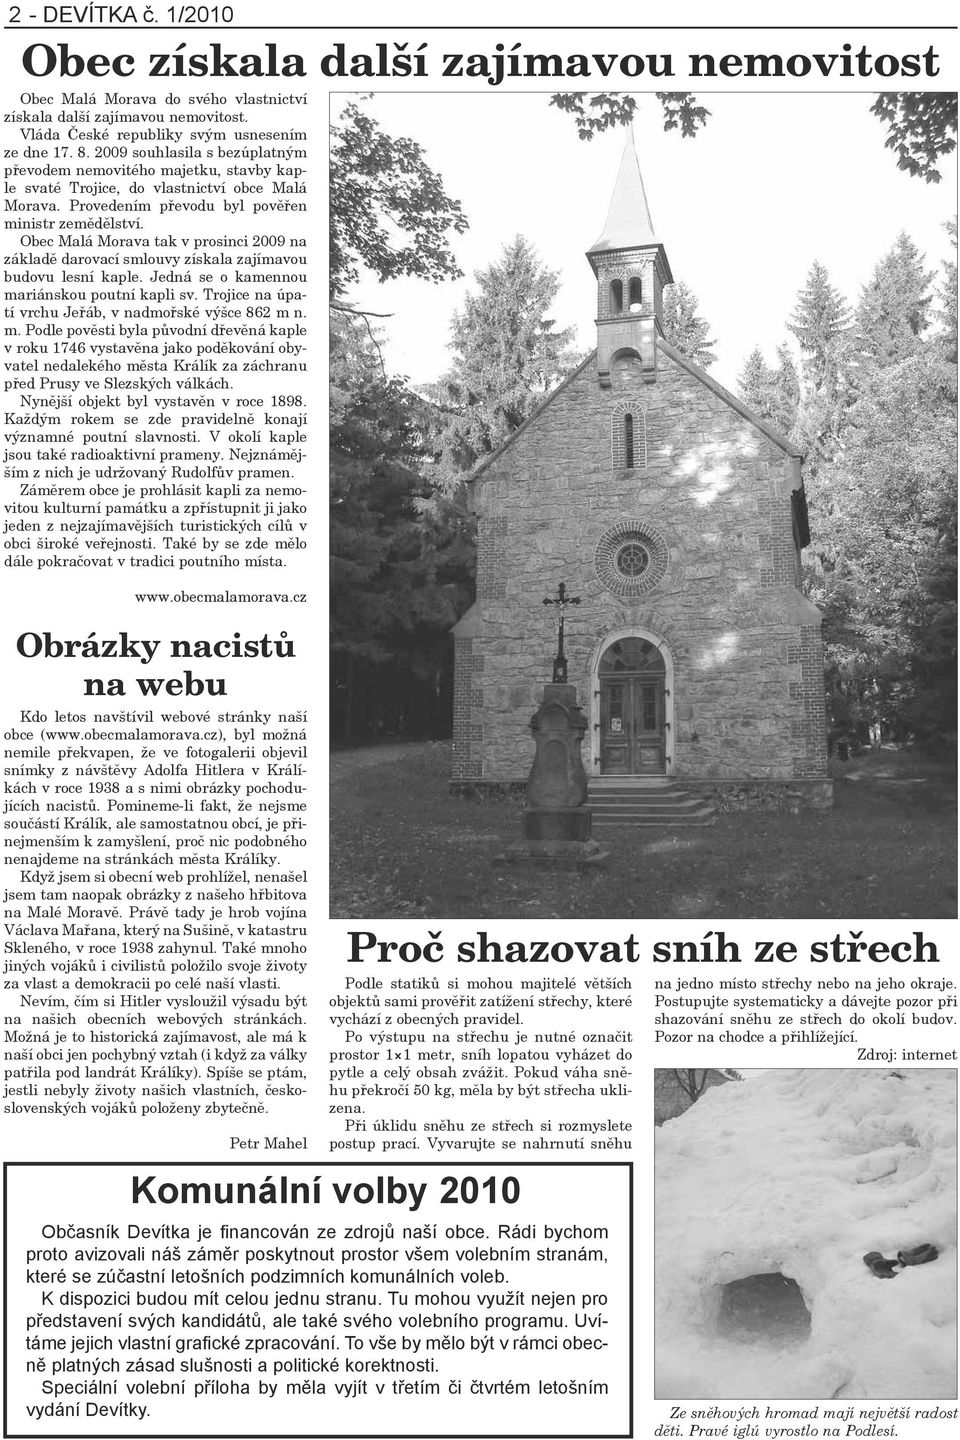 Obec Malá Morava tak v prosinci 2009 na základě darovací smlouvy získala zajímavou budovu lesní kaple. Jedná se o kamennou mariánskou poutní kapli sv.